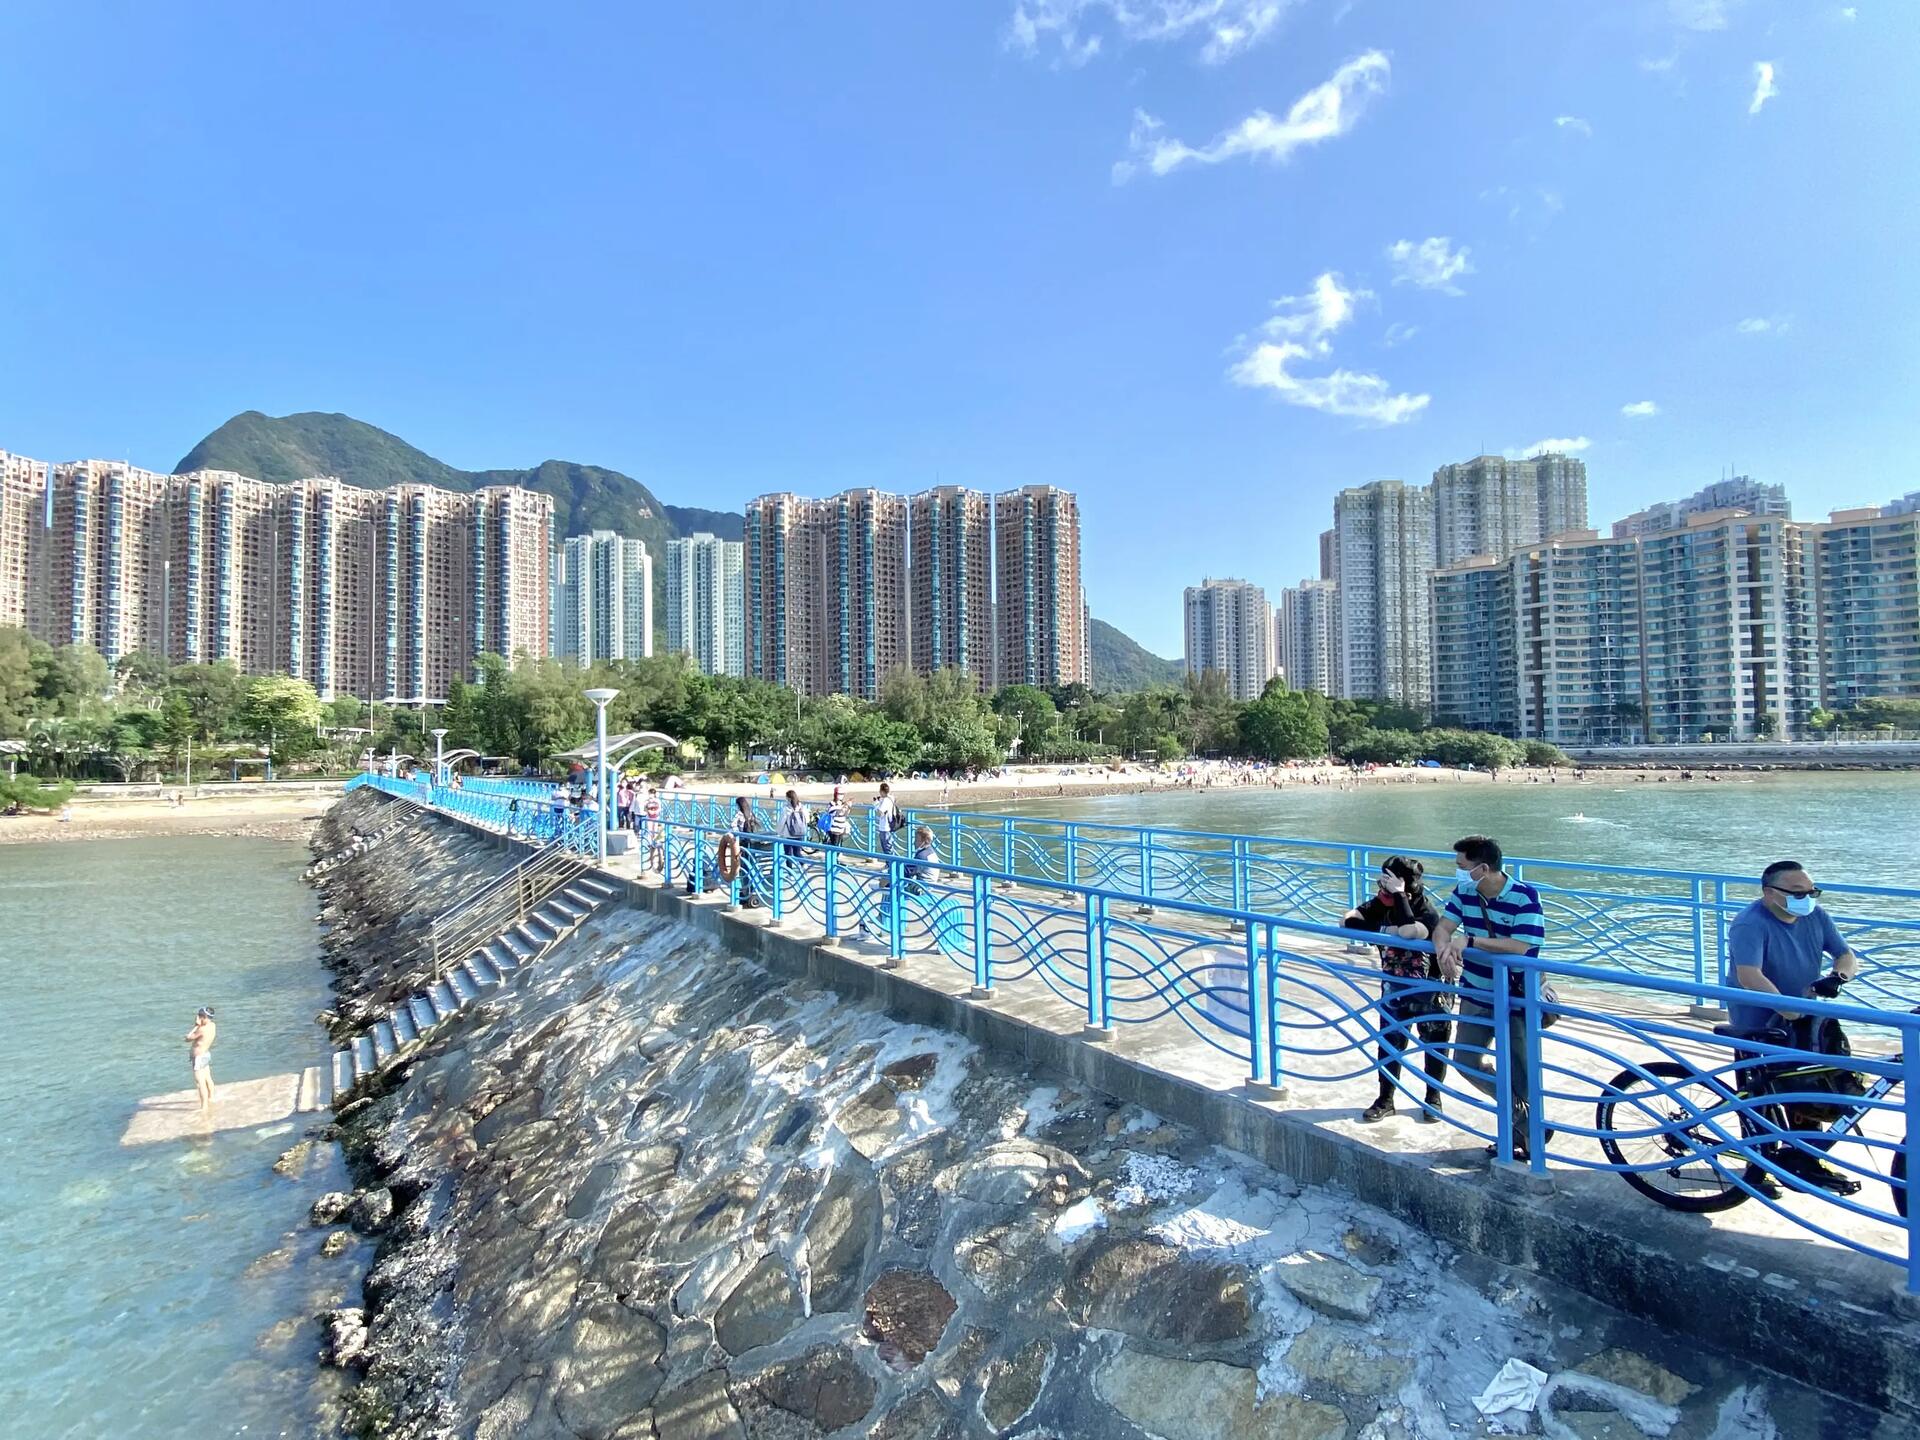 Wu Kai Sha Pier view like an island